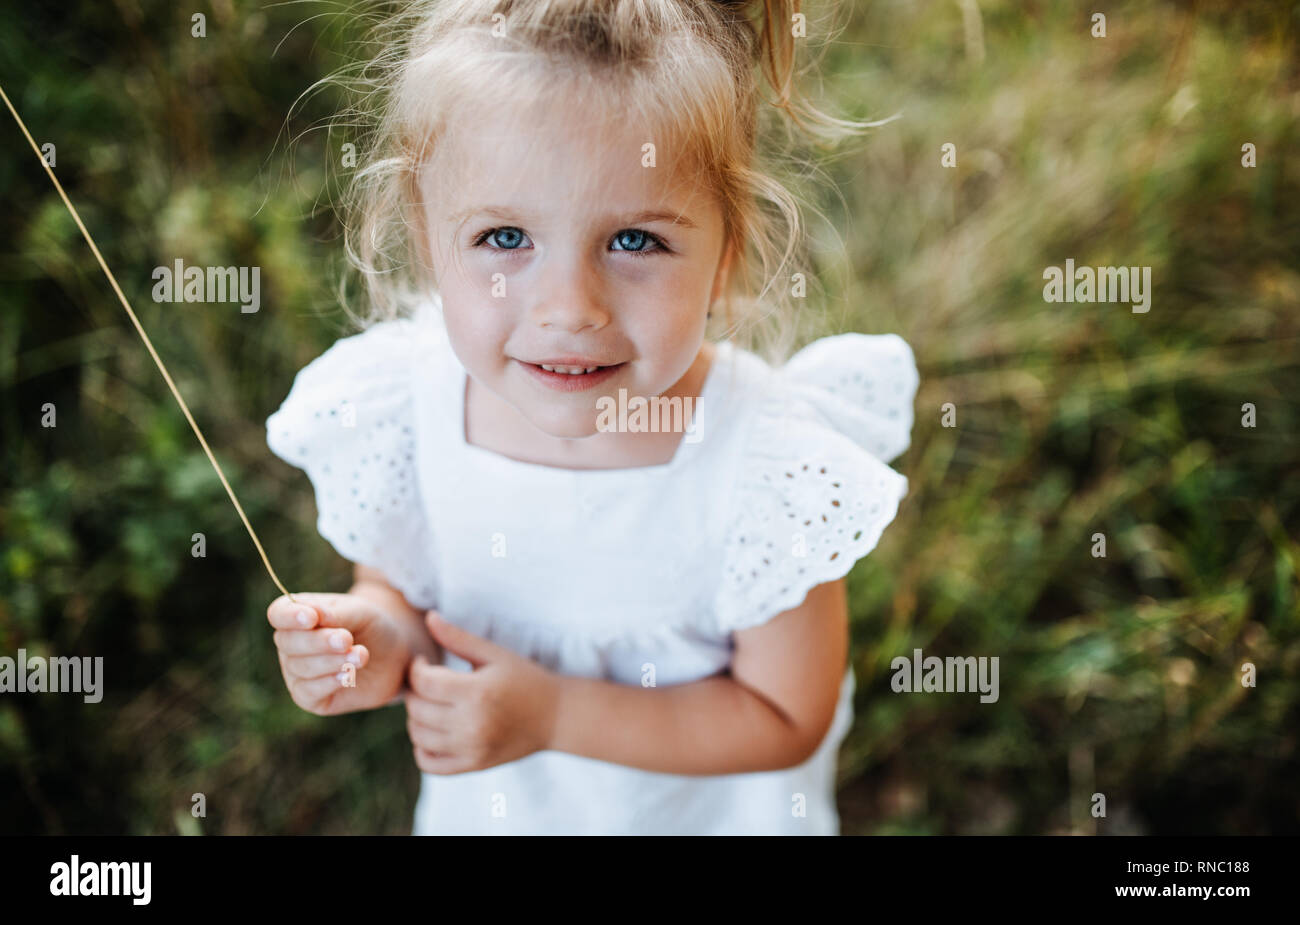 Ein Porträt der kleinen Mädchen im sonnigen Sommer Natur. Stockfoto